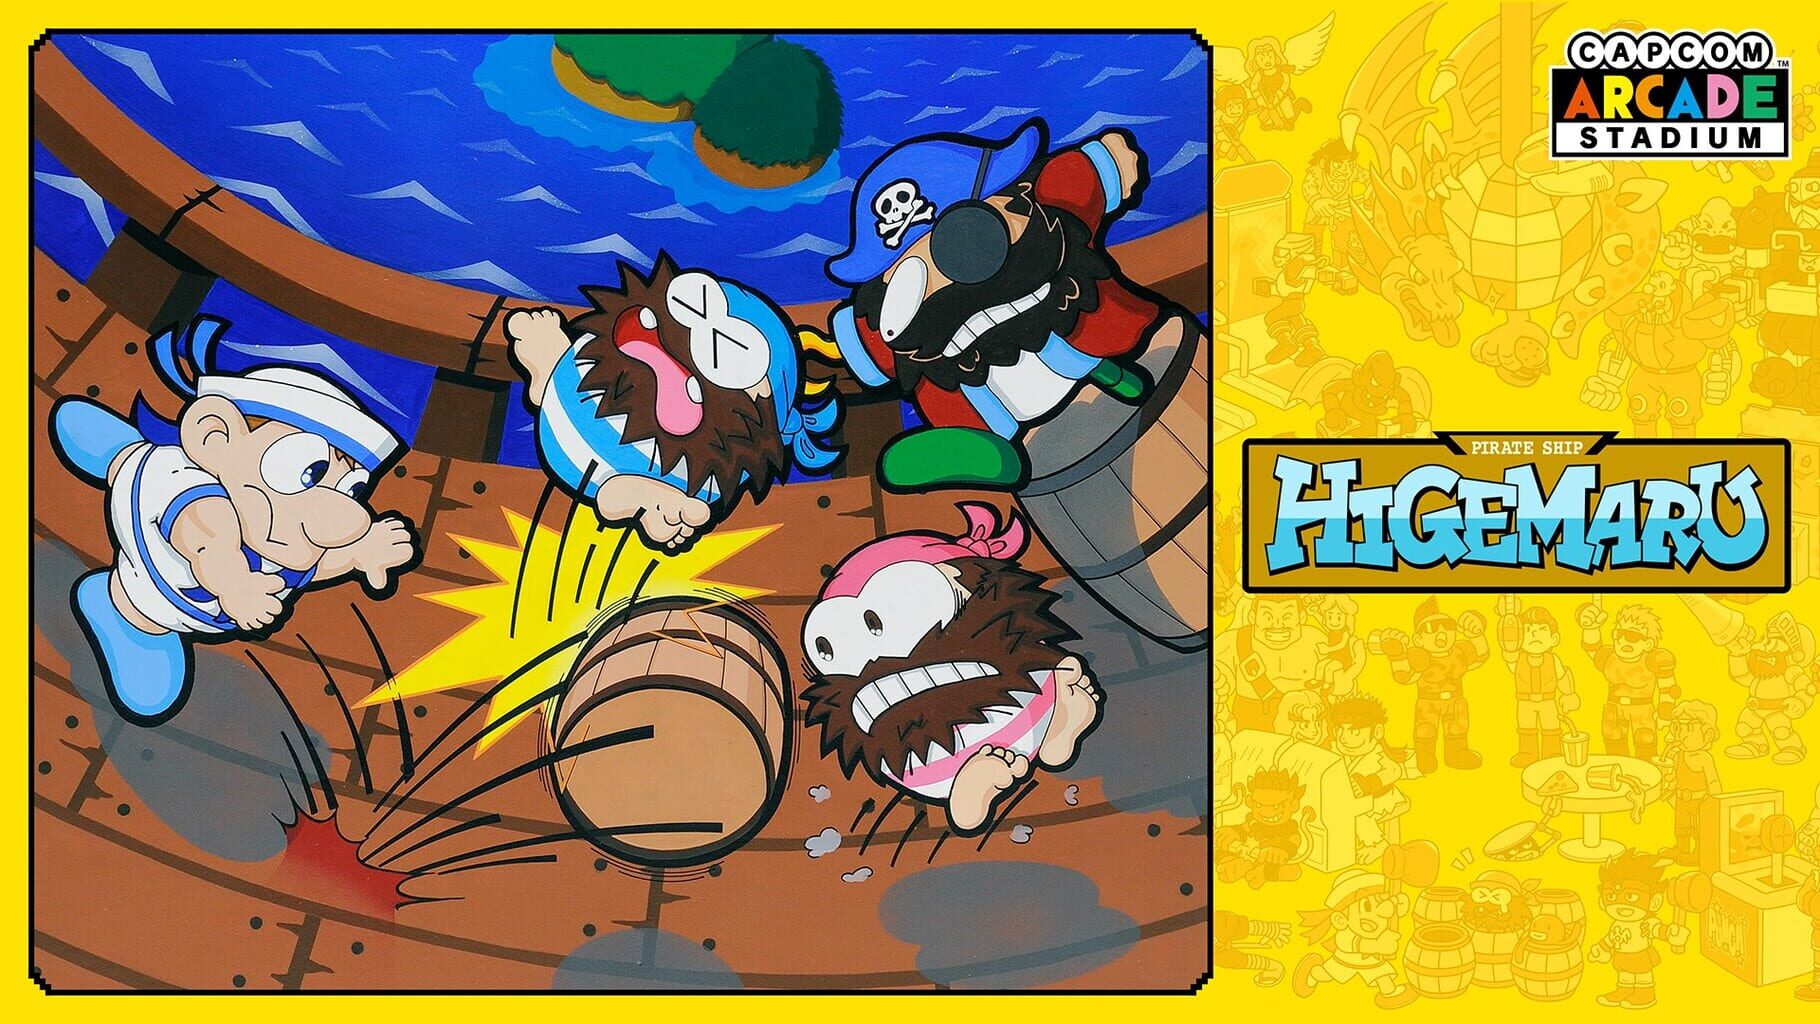 Capcom Arcade Stadium: Pirate Ship Higemaru artwork